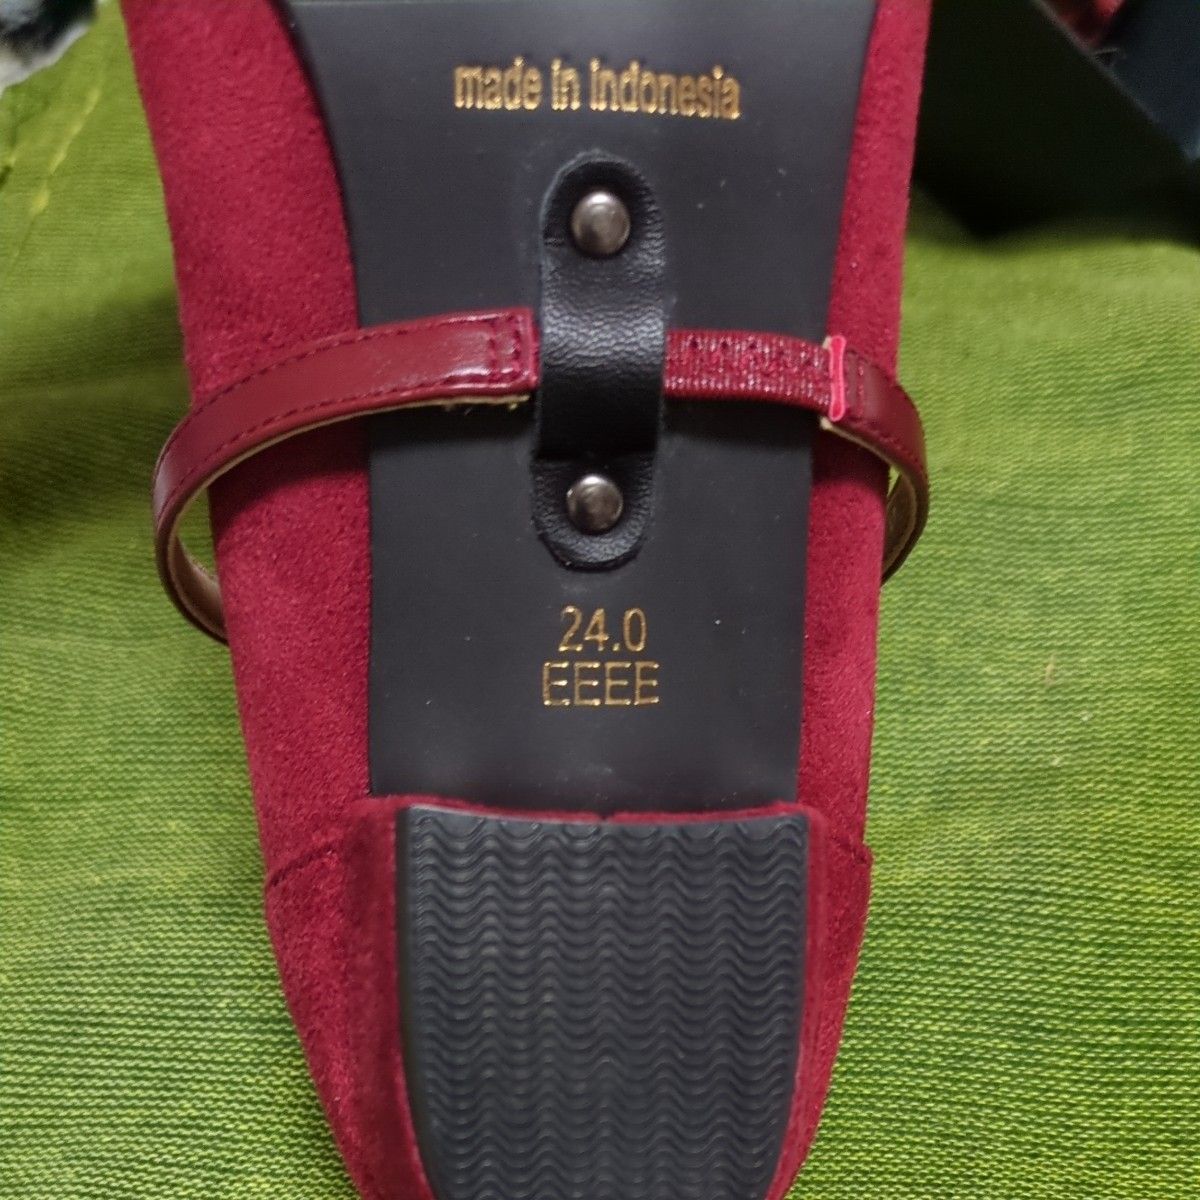  BENEBIS パンプス 24.0cm レッド 赤 ルビー色3cmヒール●オマケ付き● 靴 シューズ  スウェード